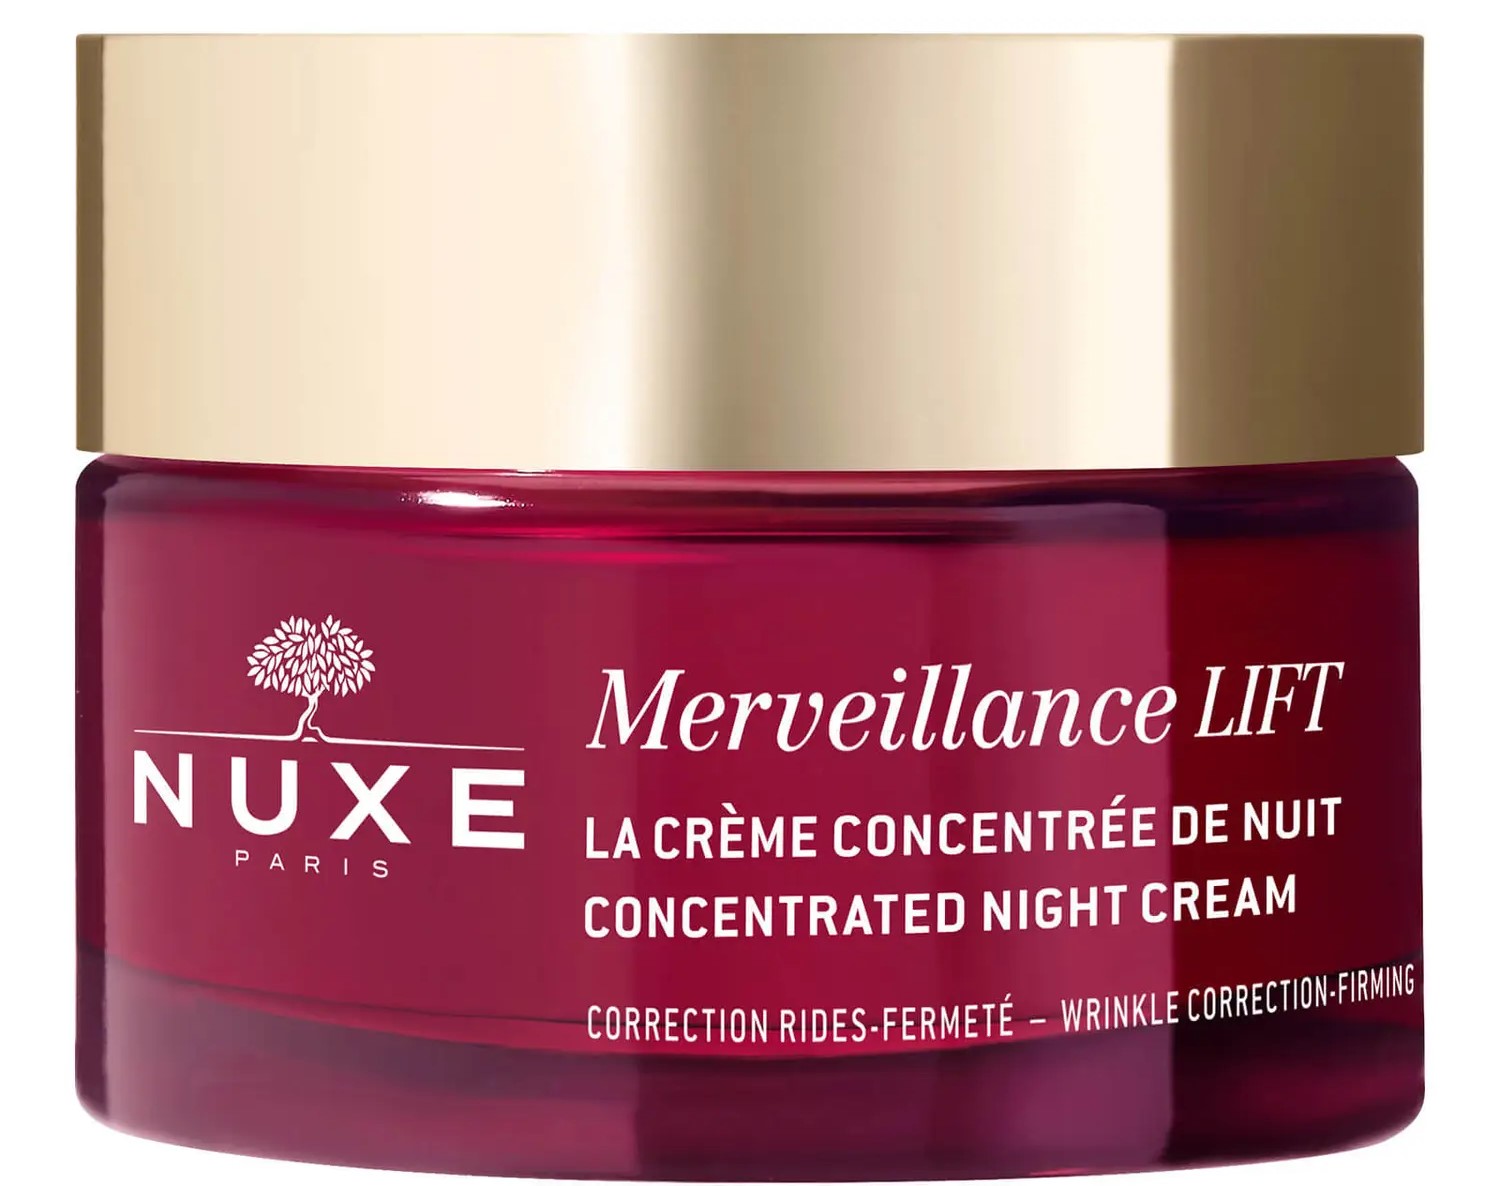 Crema Concentrada de Noche, Merveillance Lift 50 ml. Crema reafirmante de noche - corrección arrugas, firmeza. 97 % de ingredientes de origen natural